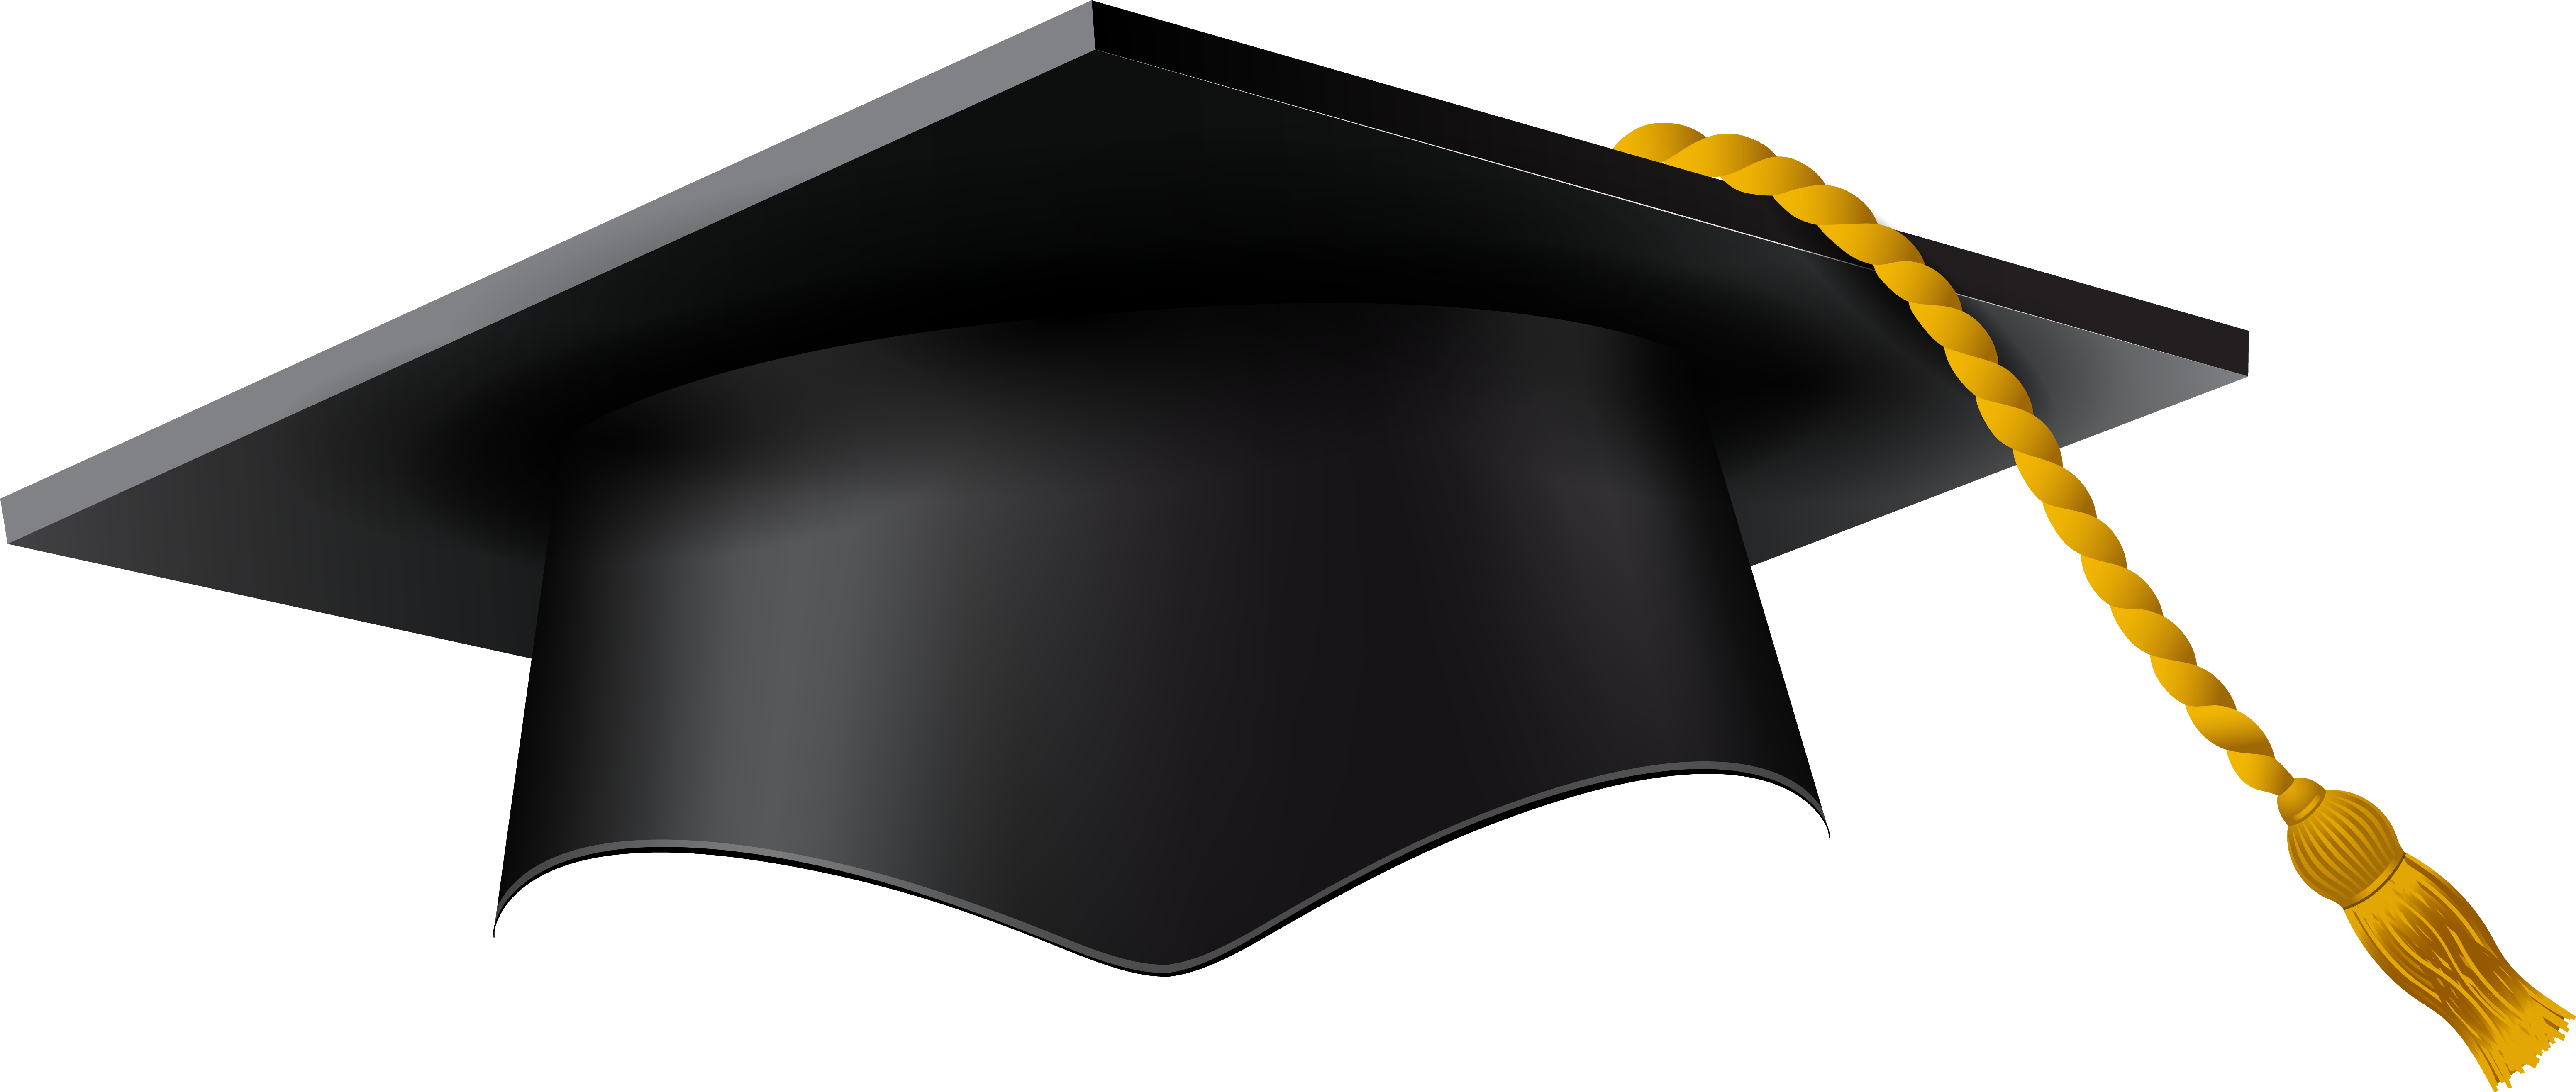 Download Graduation Cap Black Graduation Cap Vector Png Png Image With No Background Pngkey Com